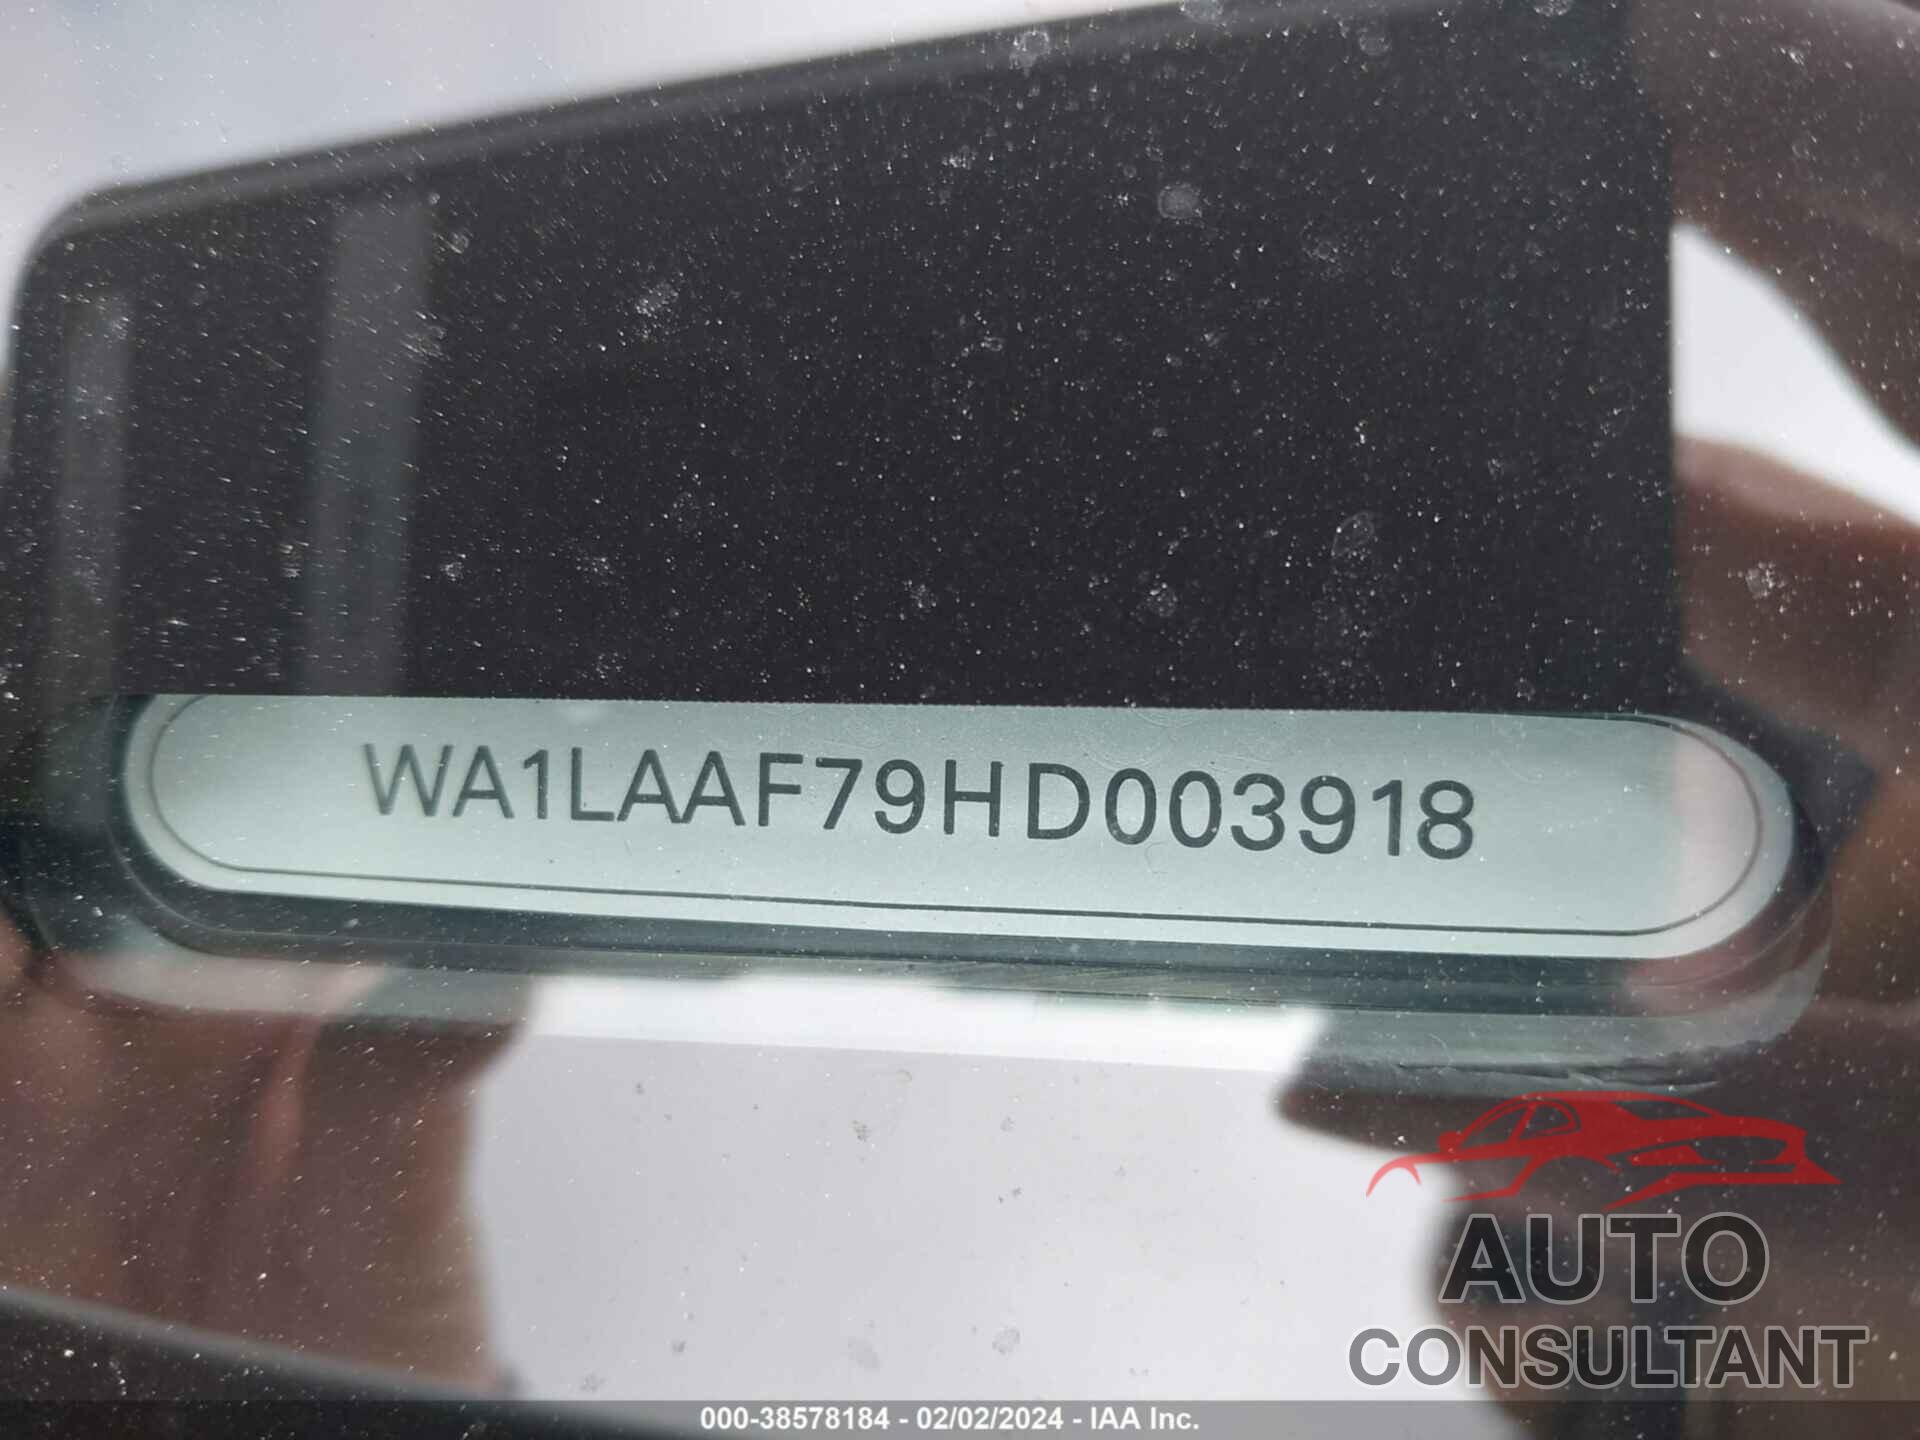 AUDI Q7 2017 - WA1LAAF79HD003918